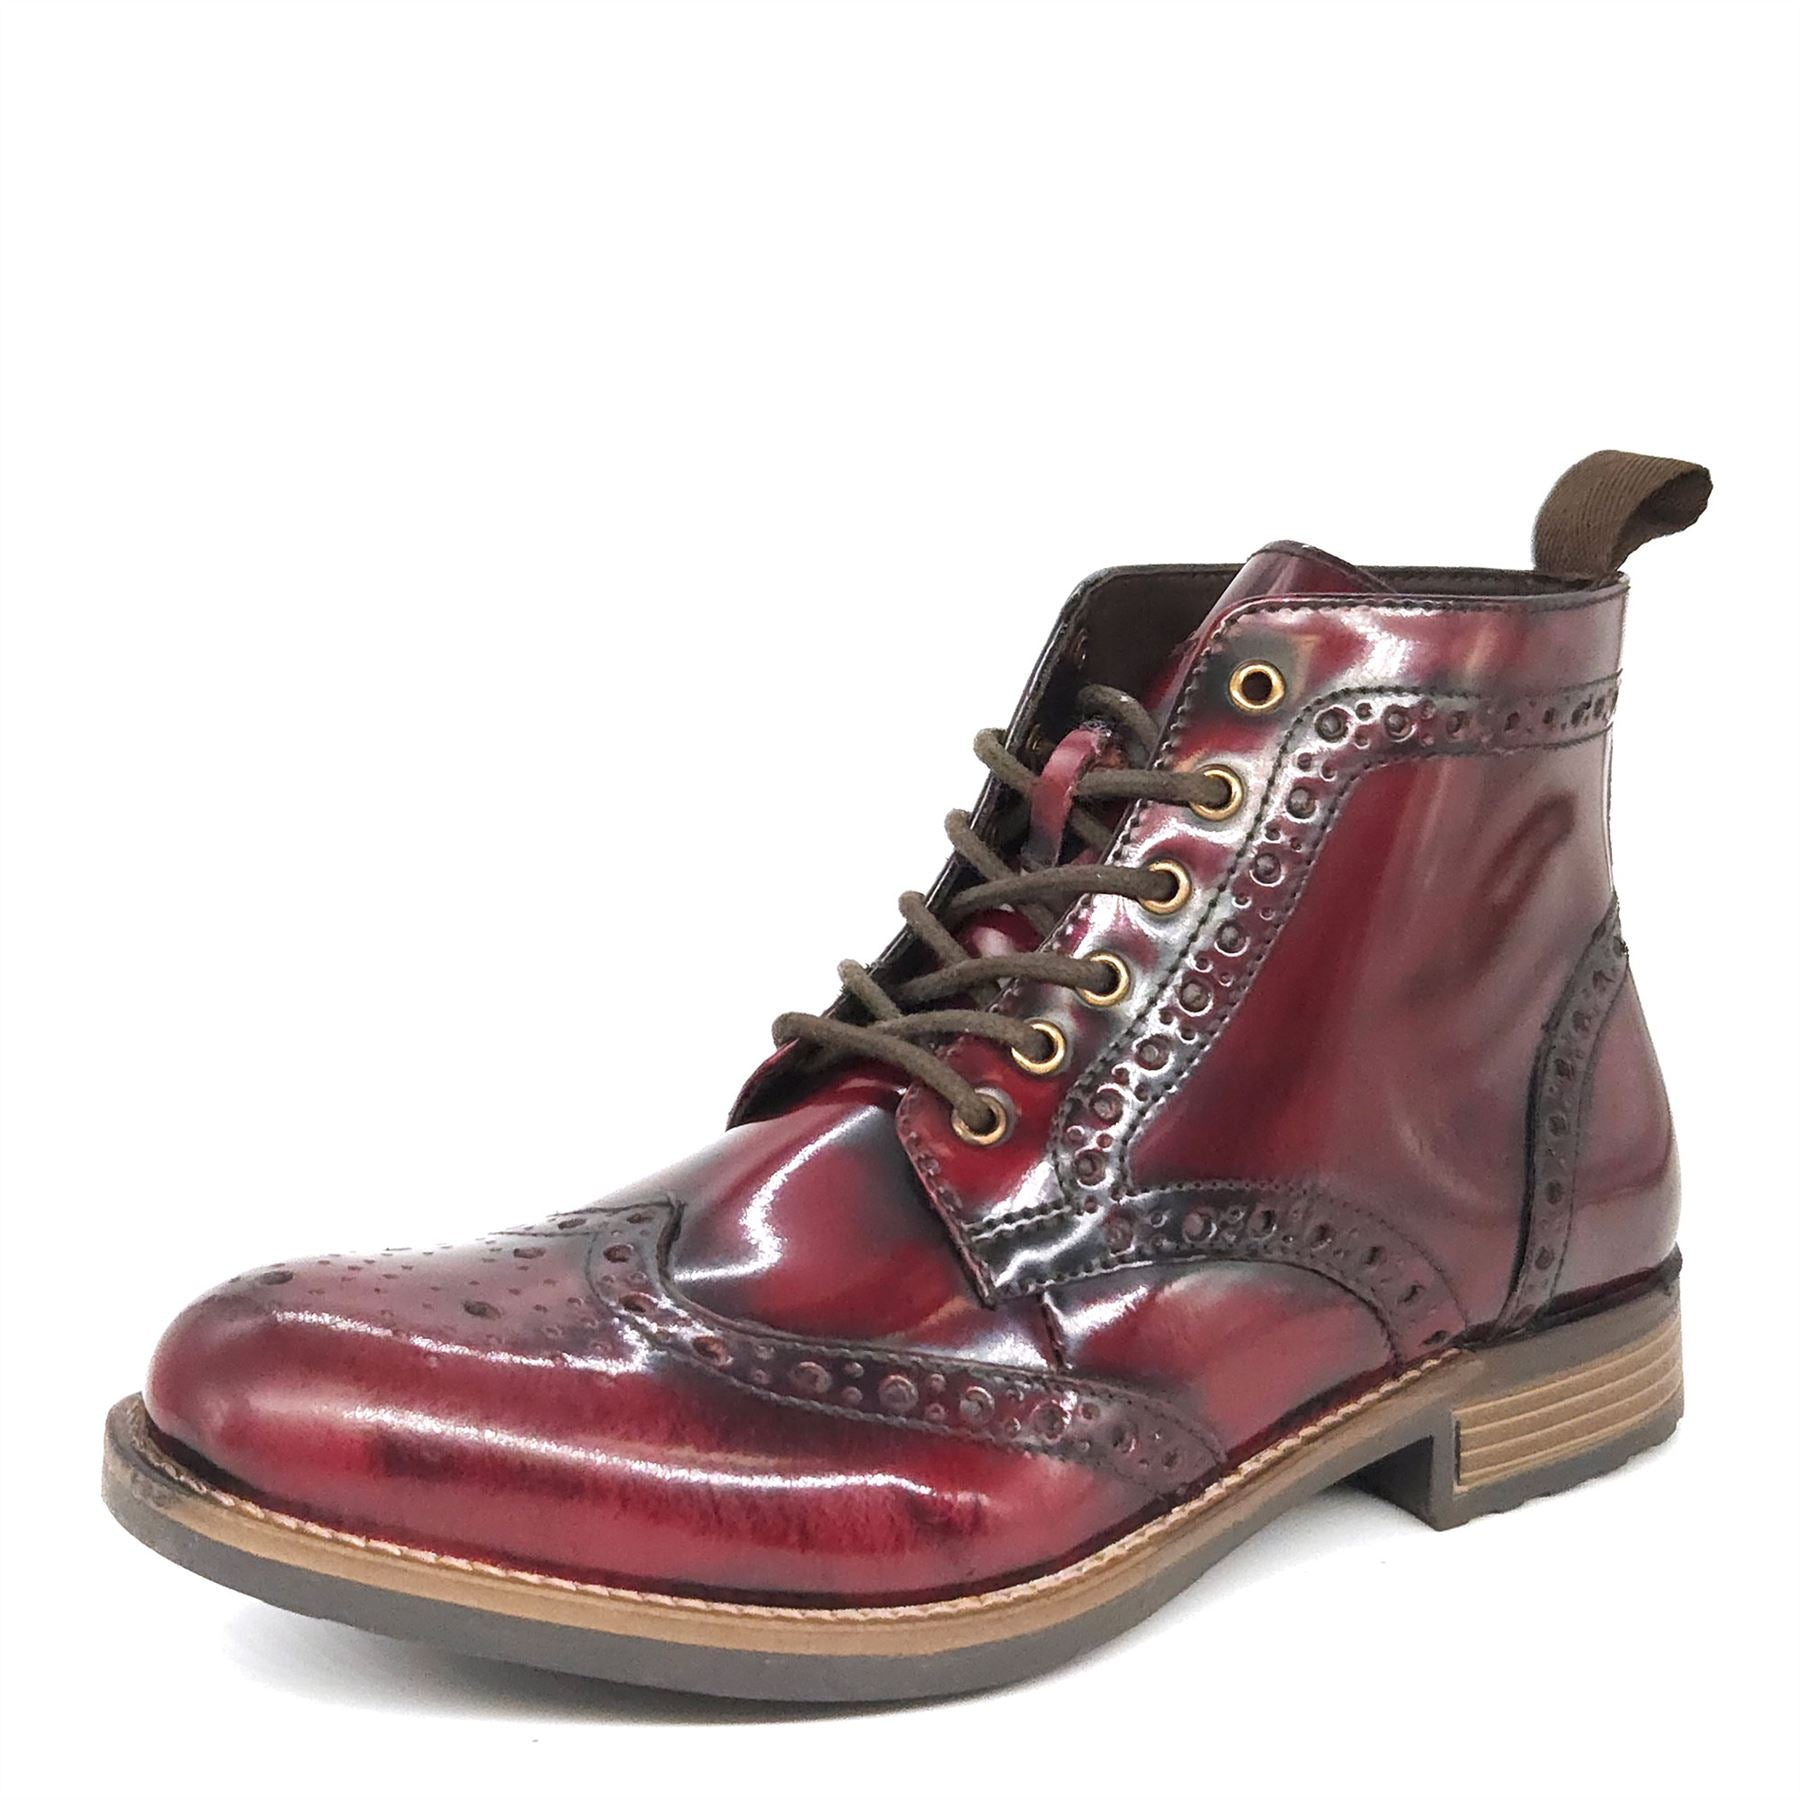 Kingston Bordo Brogue Lace Up Boots | HX London